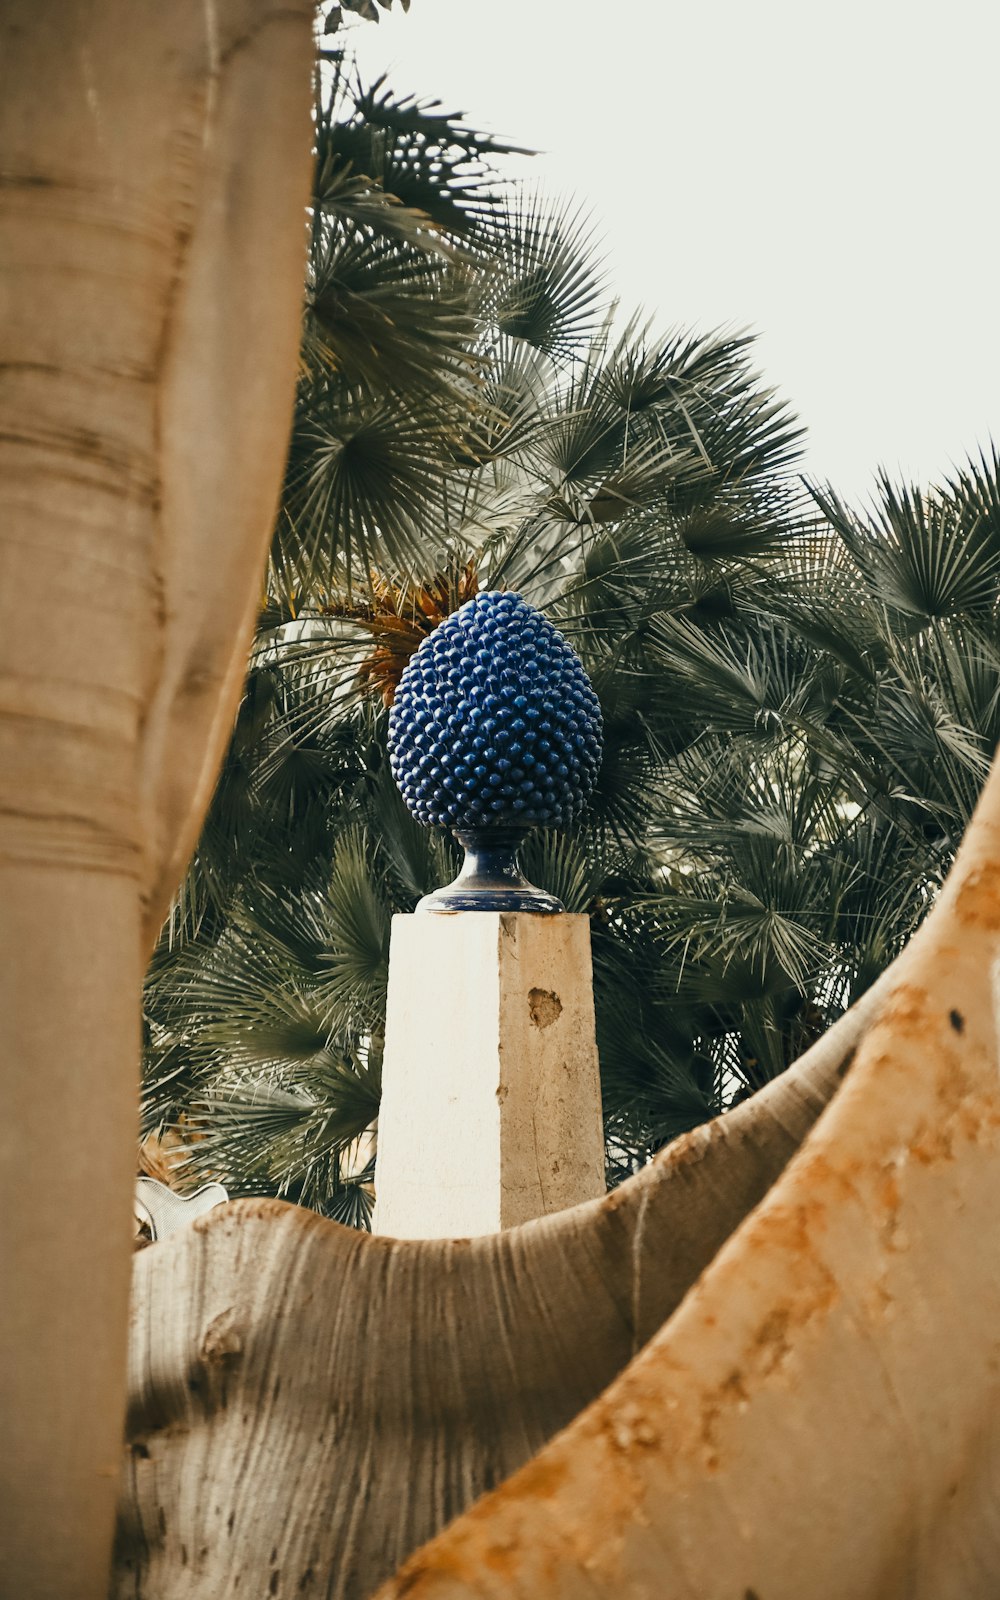 시멘트 기둥 위에 앉아있는 파란 공